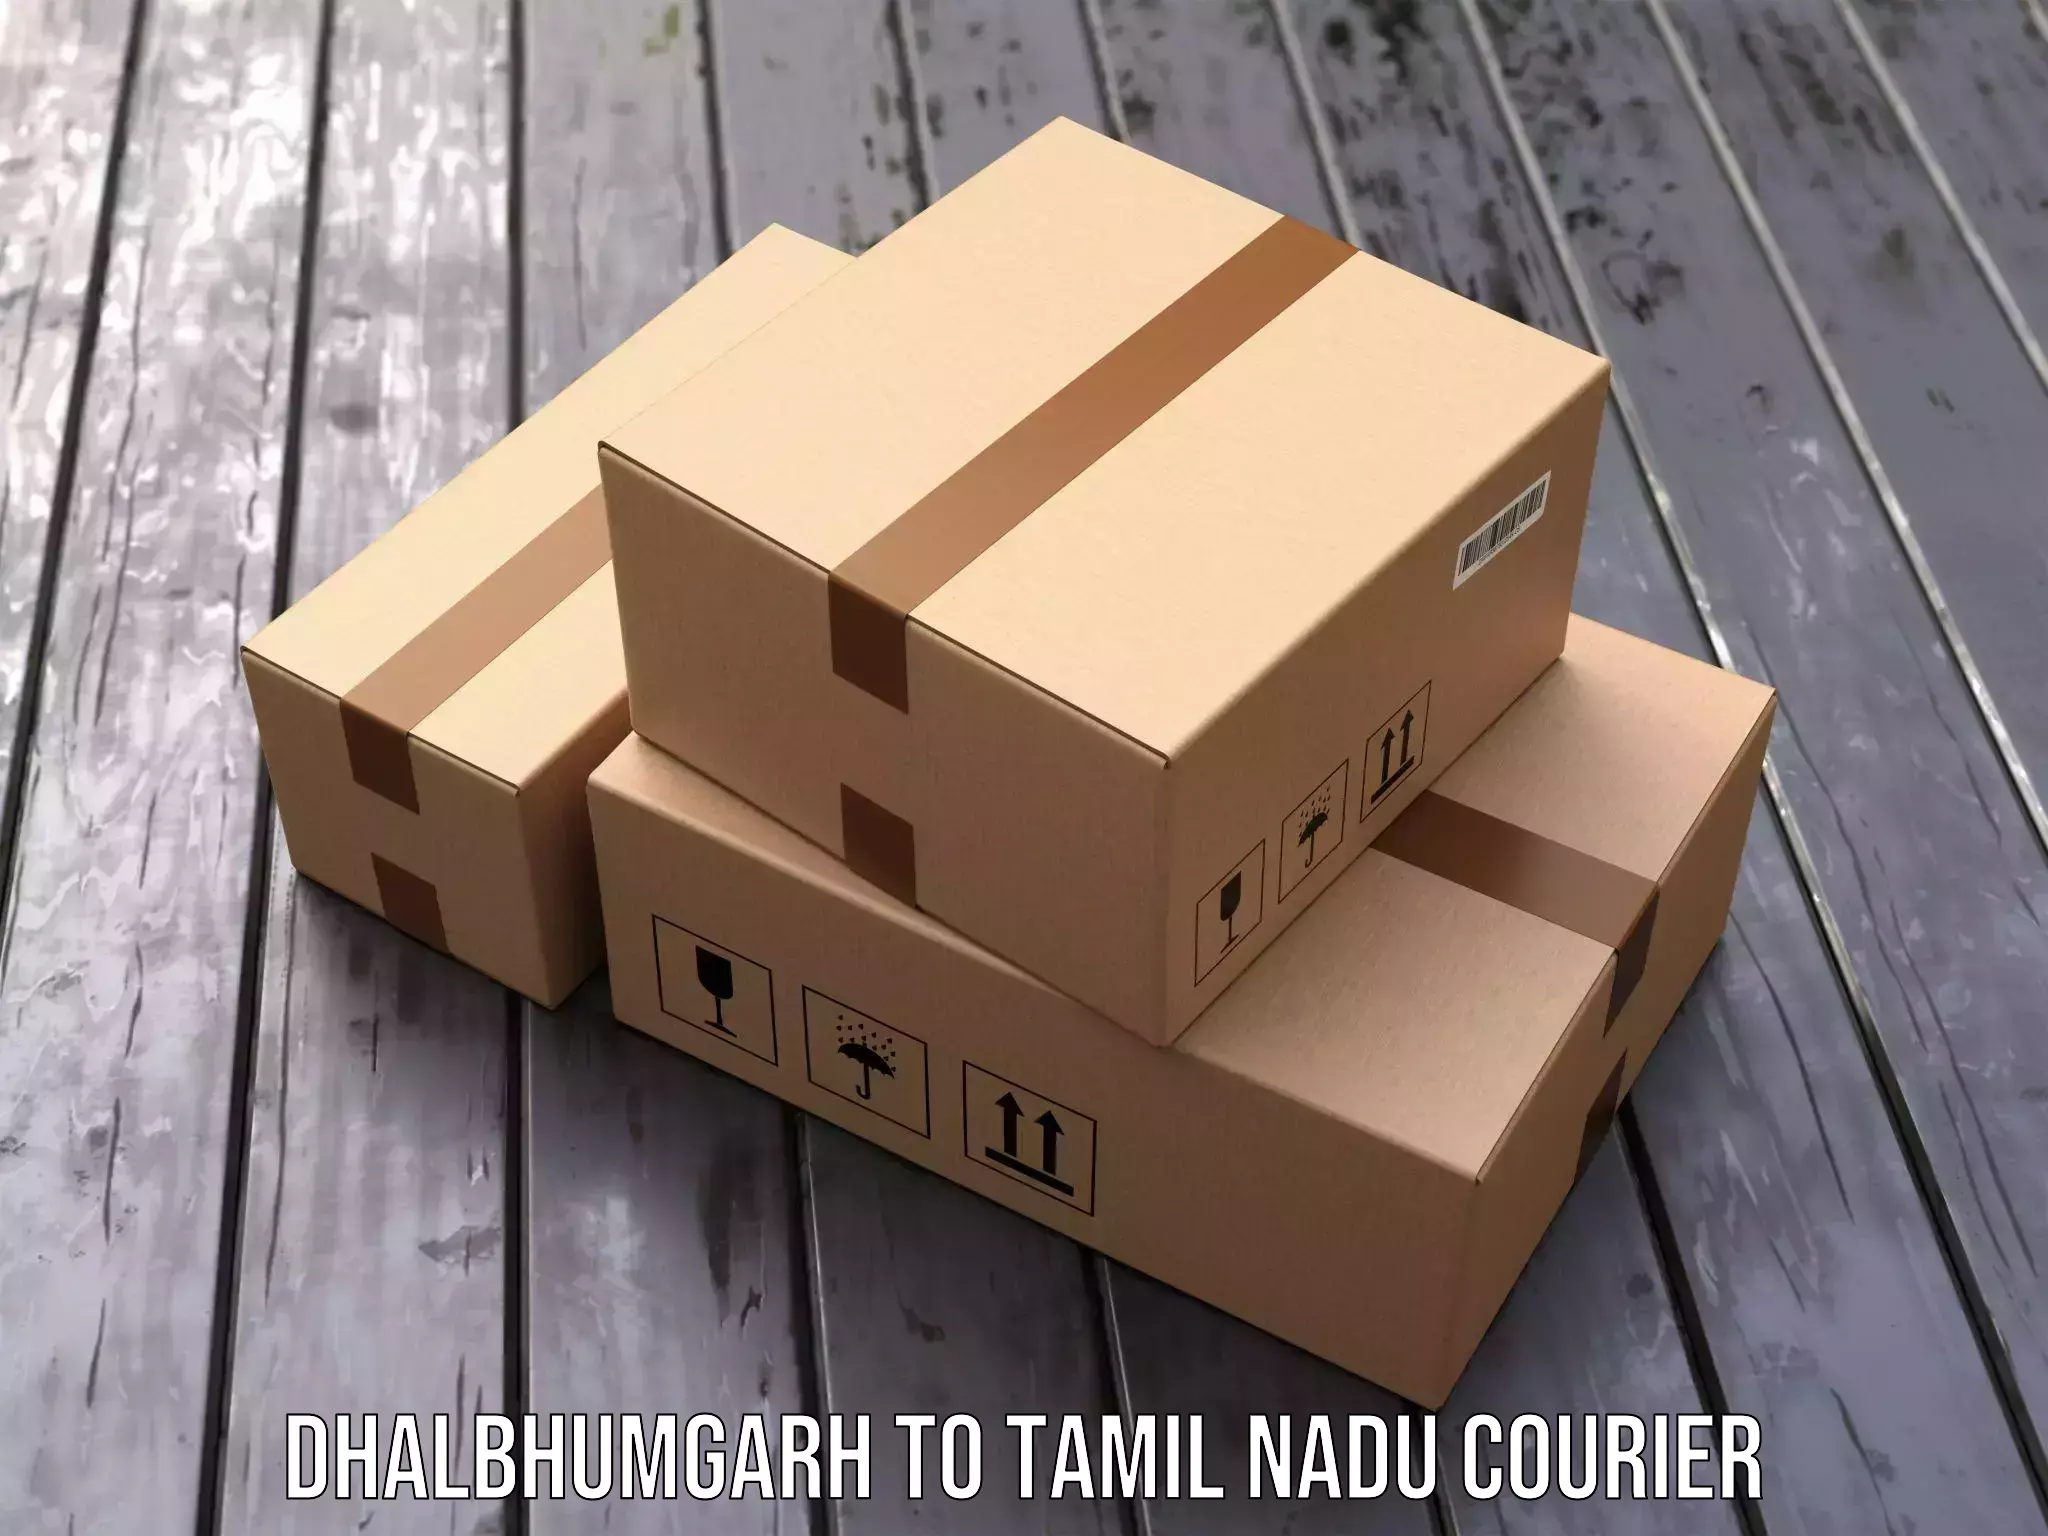 Nationwide shipping capabilities Dhalbhumgarh to Tiruvannamalai